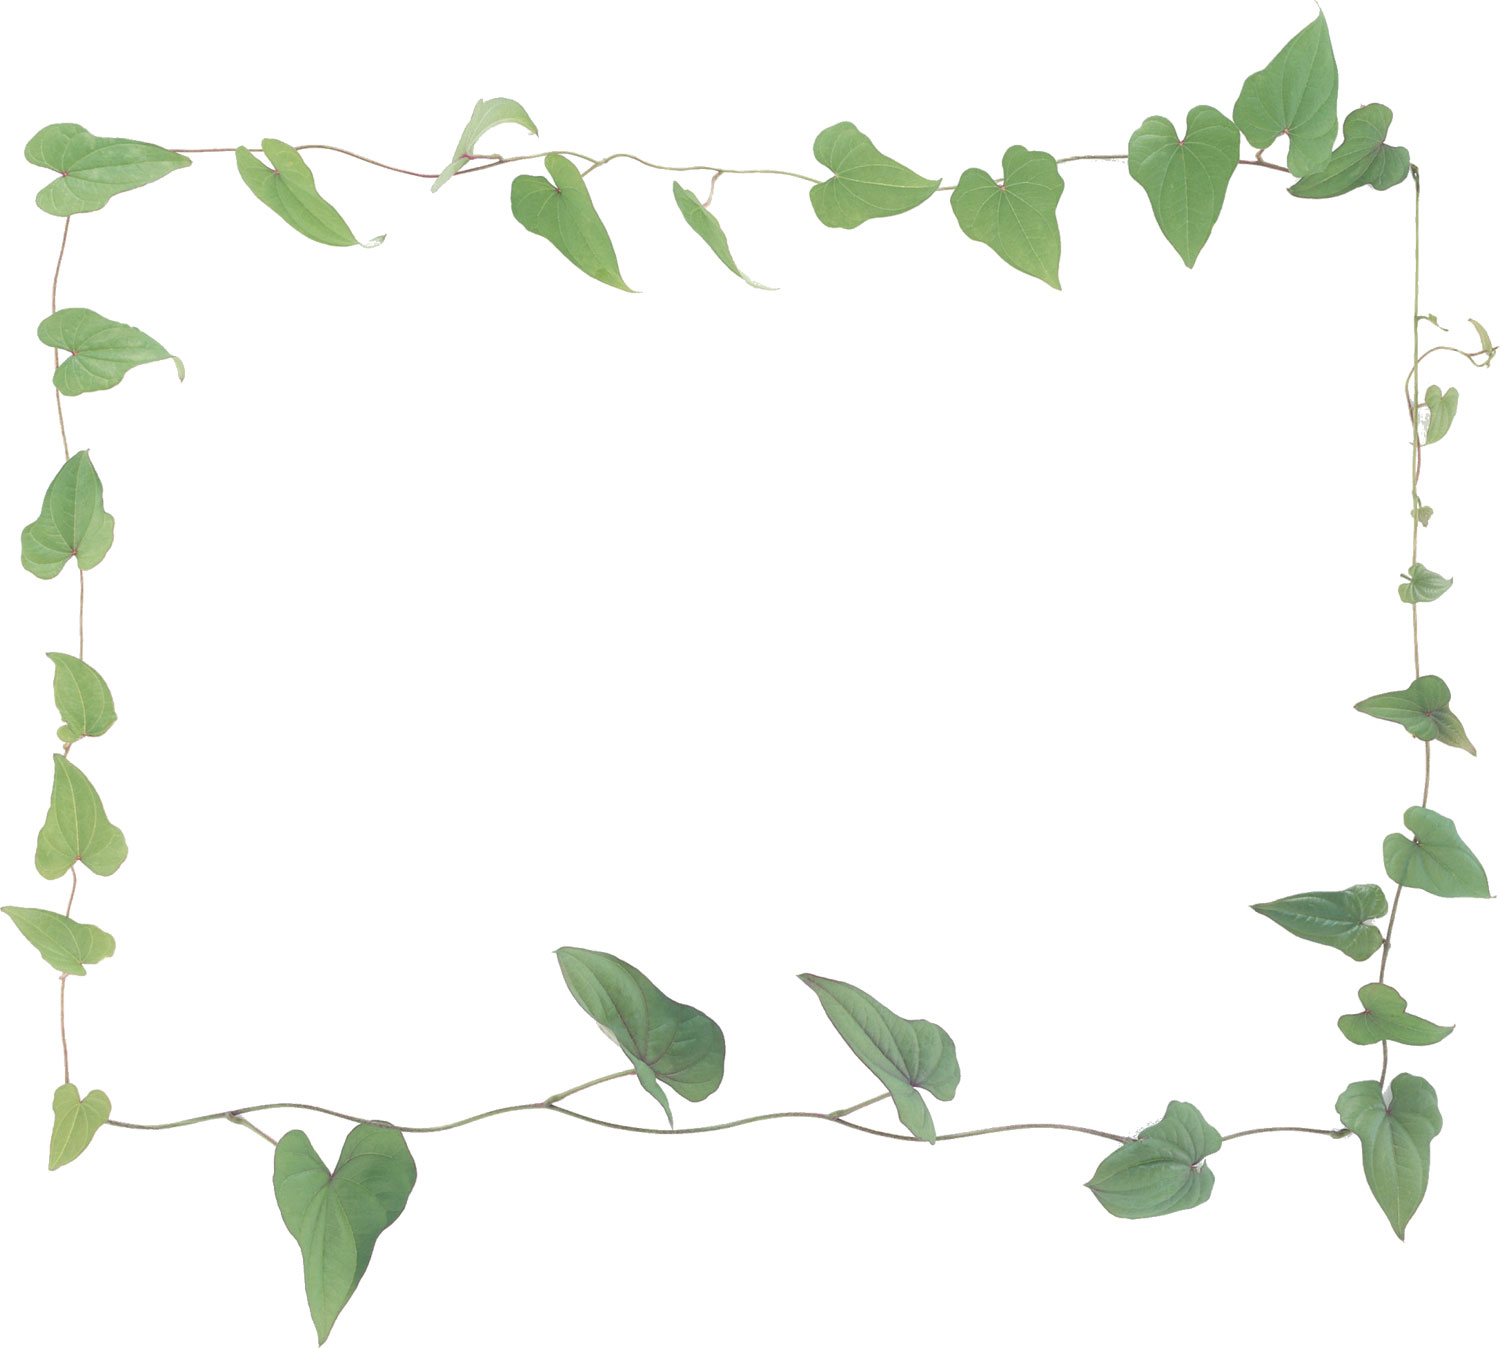 葉っぱ 草木のイラスト フリー素材 フレーム枠no 0 ドクダミの葉 緑 蔦